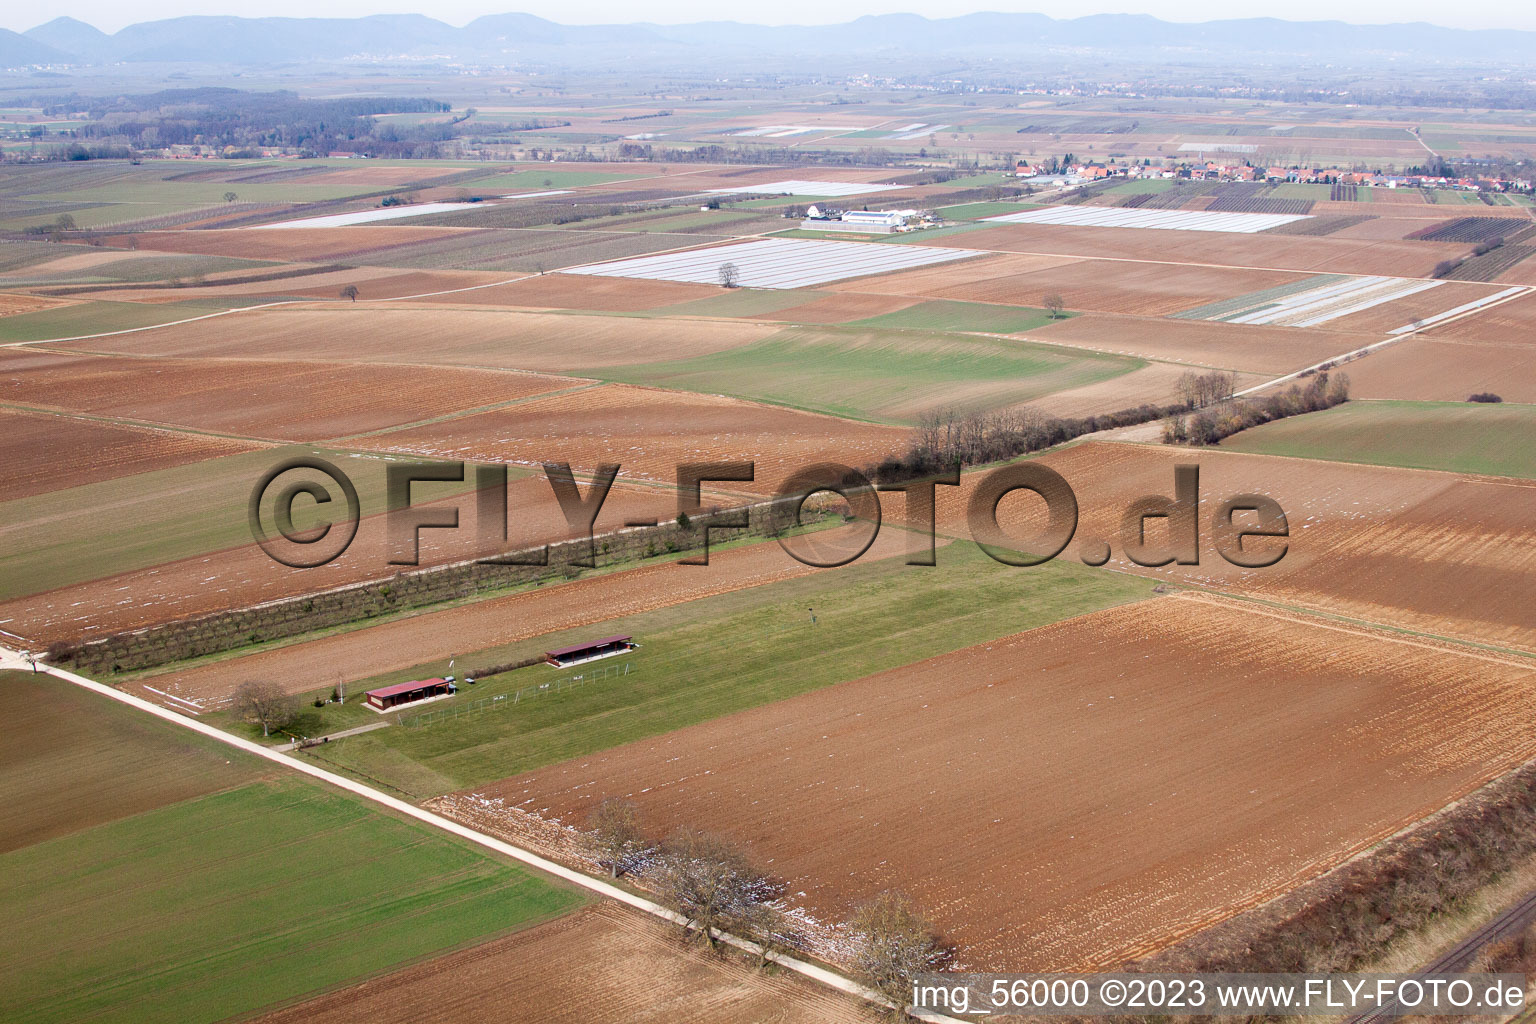 Aérodrome modèle à Freckenfeld dans le département Rhénanie-Palatinat, Allemagne du point de vue du drone